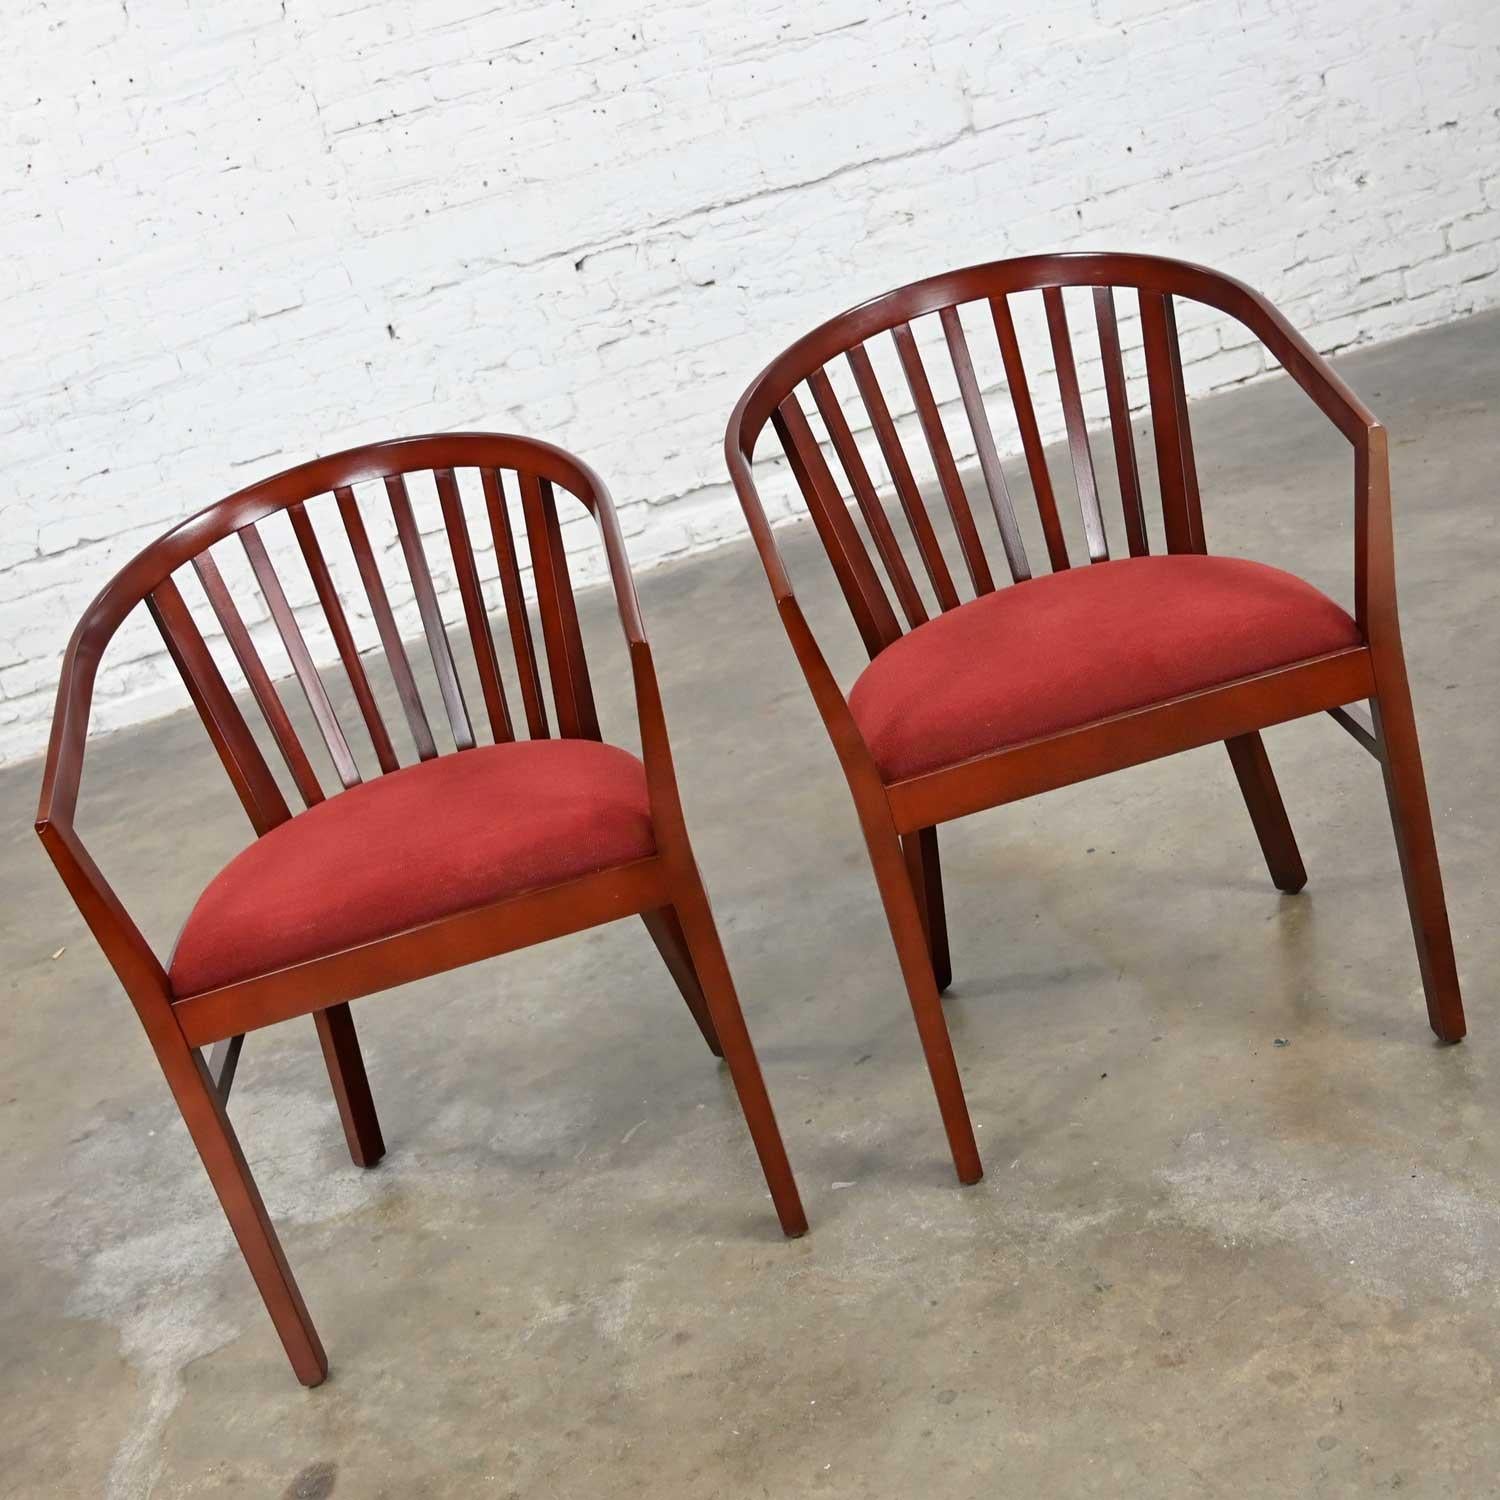 Fantastique paire de fauteuils modernes Herman Miller à dossier à lattes, composés d'une structure en bois finie en acajou brun avec des dossiers à lattes et leurs sièges en chenille orange brûlé d'origine, une paire. Très bon état, tout en gardant